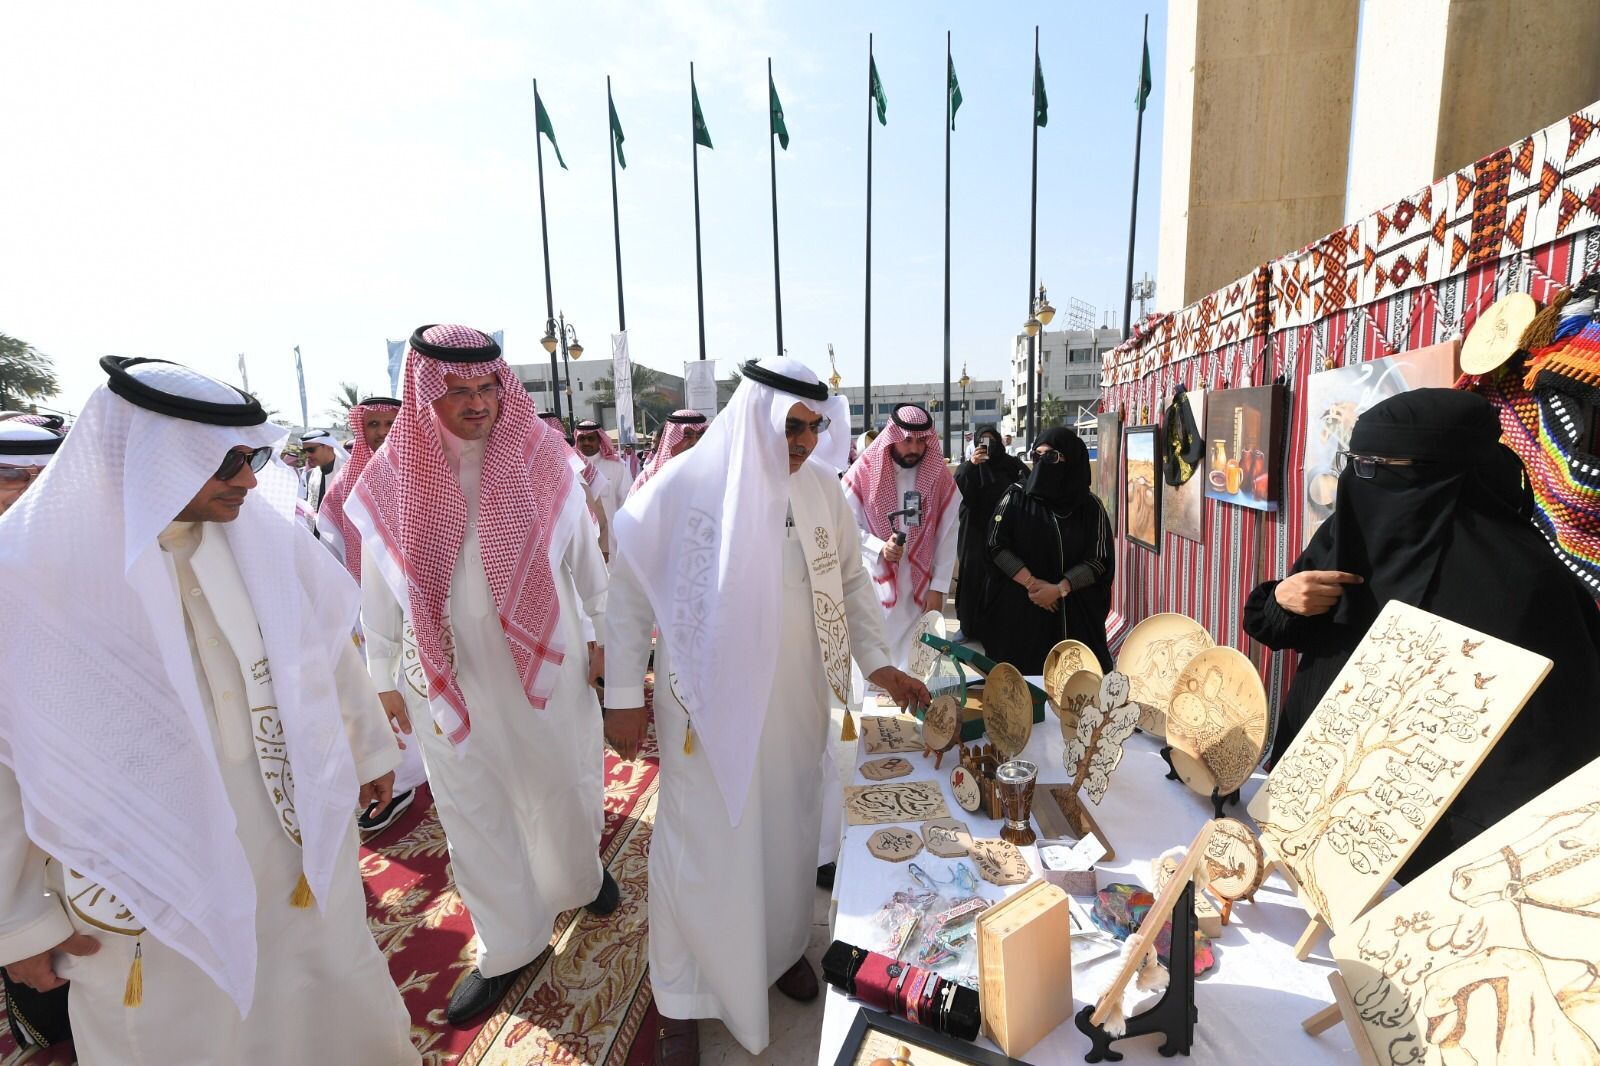 أمانة الشرقية تحتفل بيوم التأسيس بالعرضة السعودية وعدد من الأركان التراثية مع منسوبيها